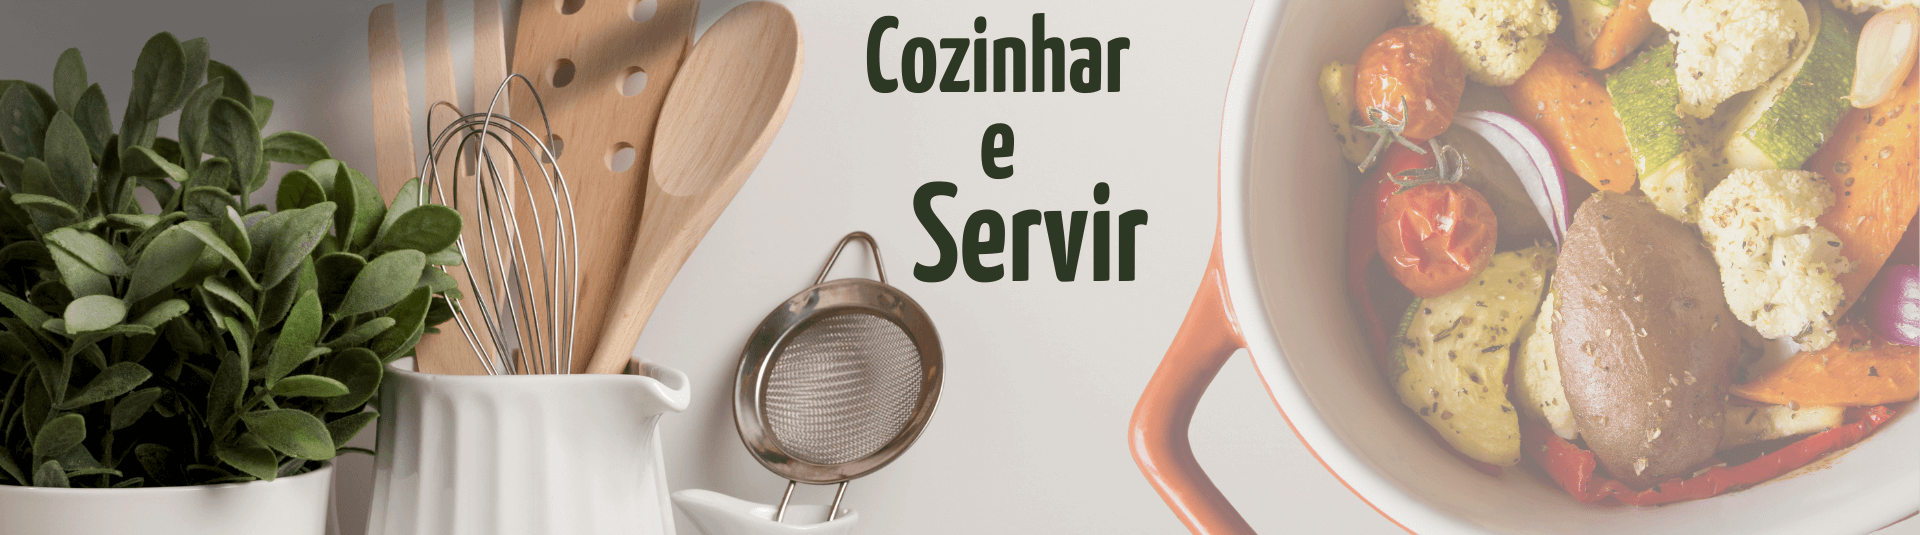 Cozinhar e Servir